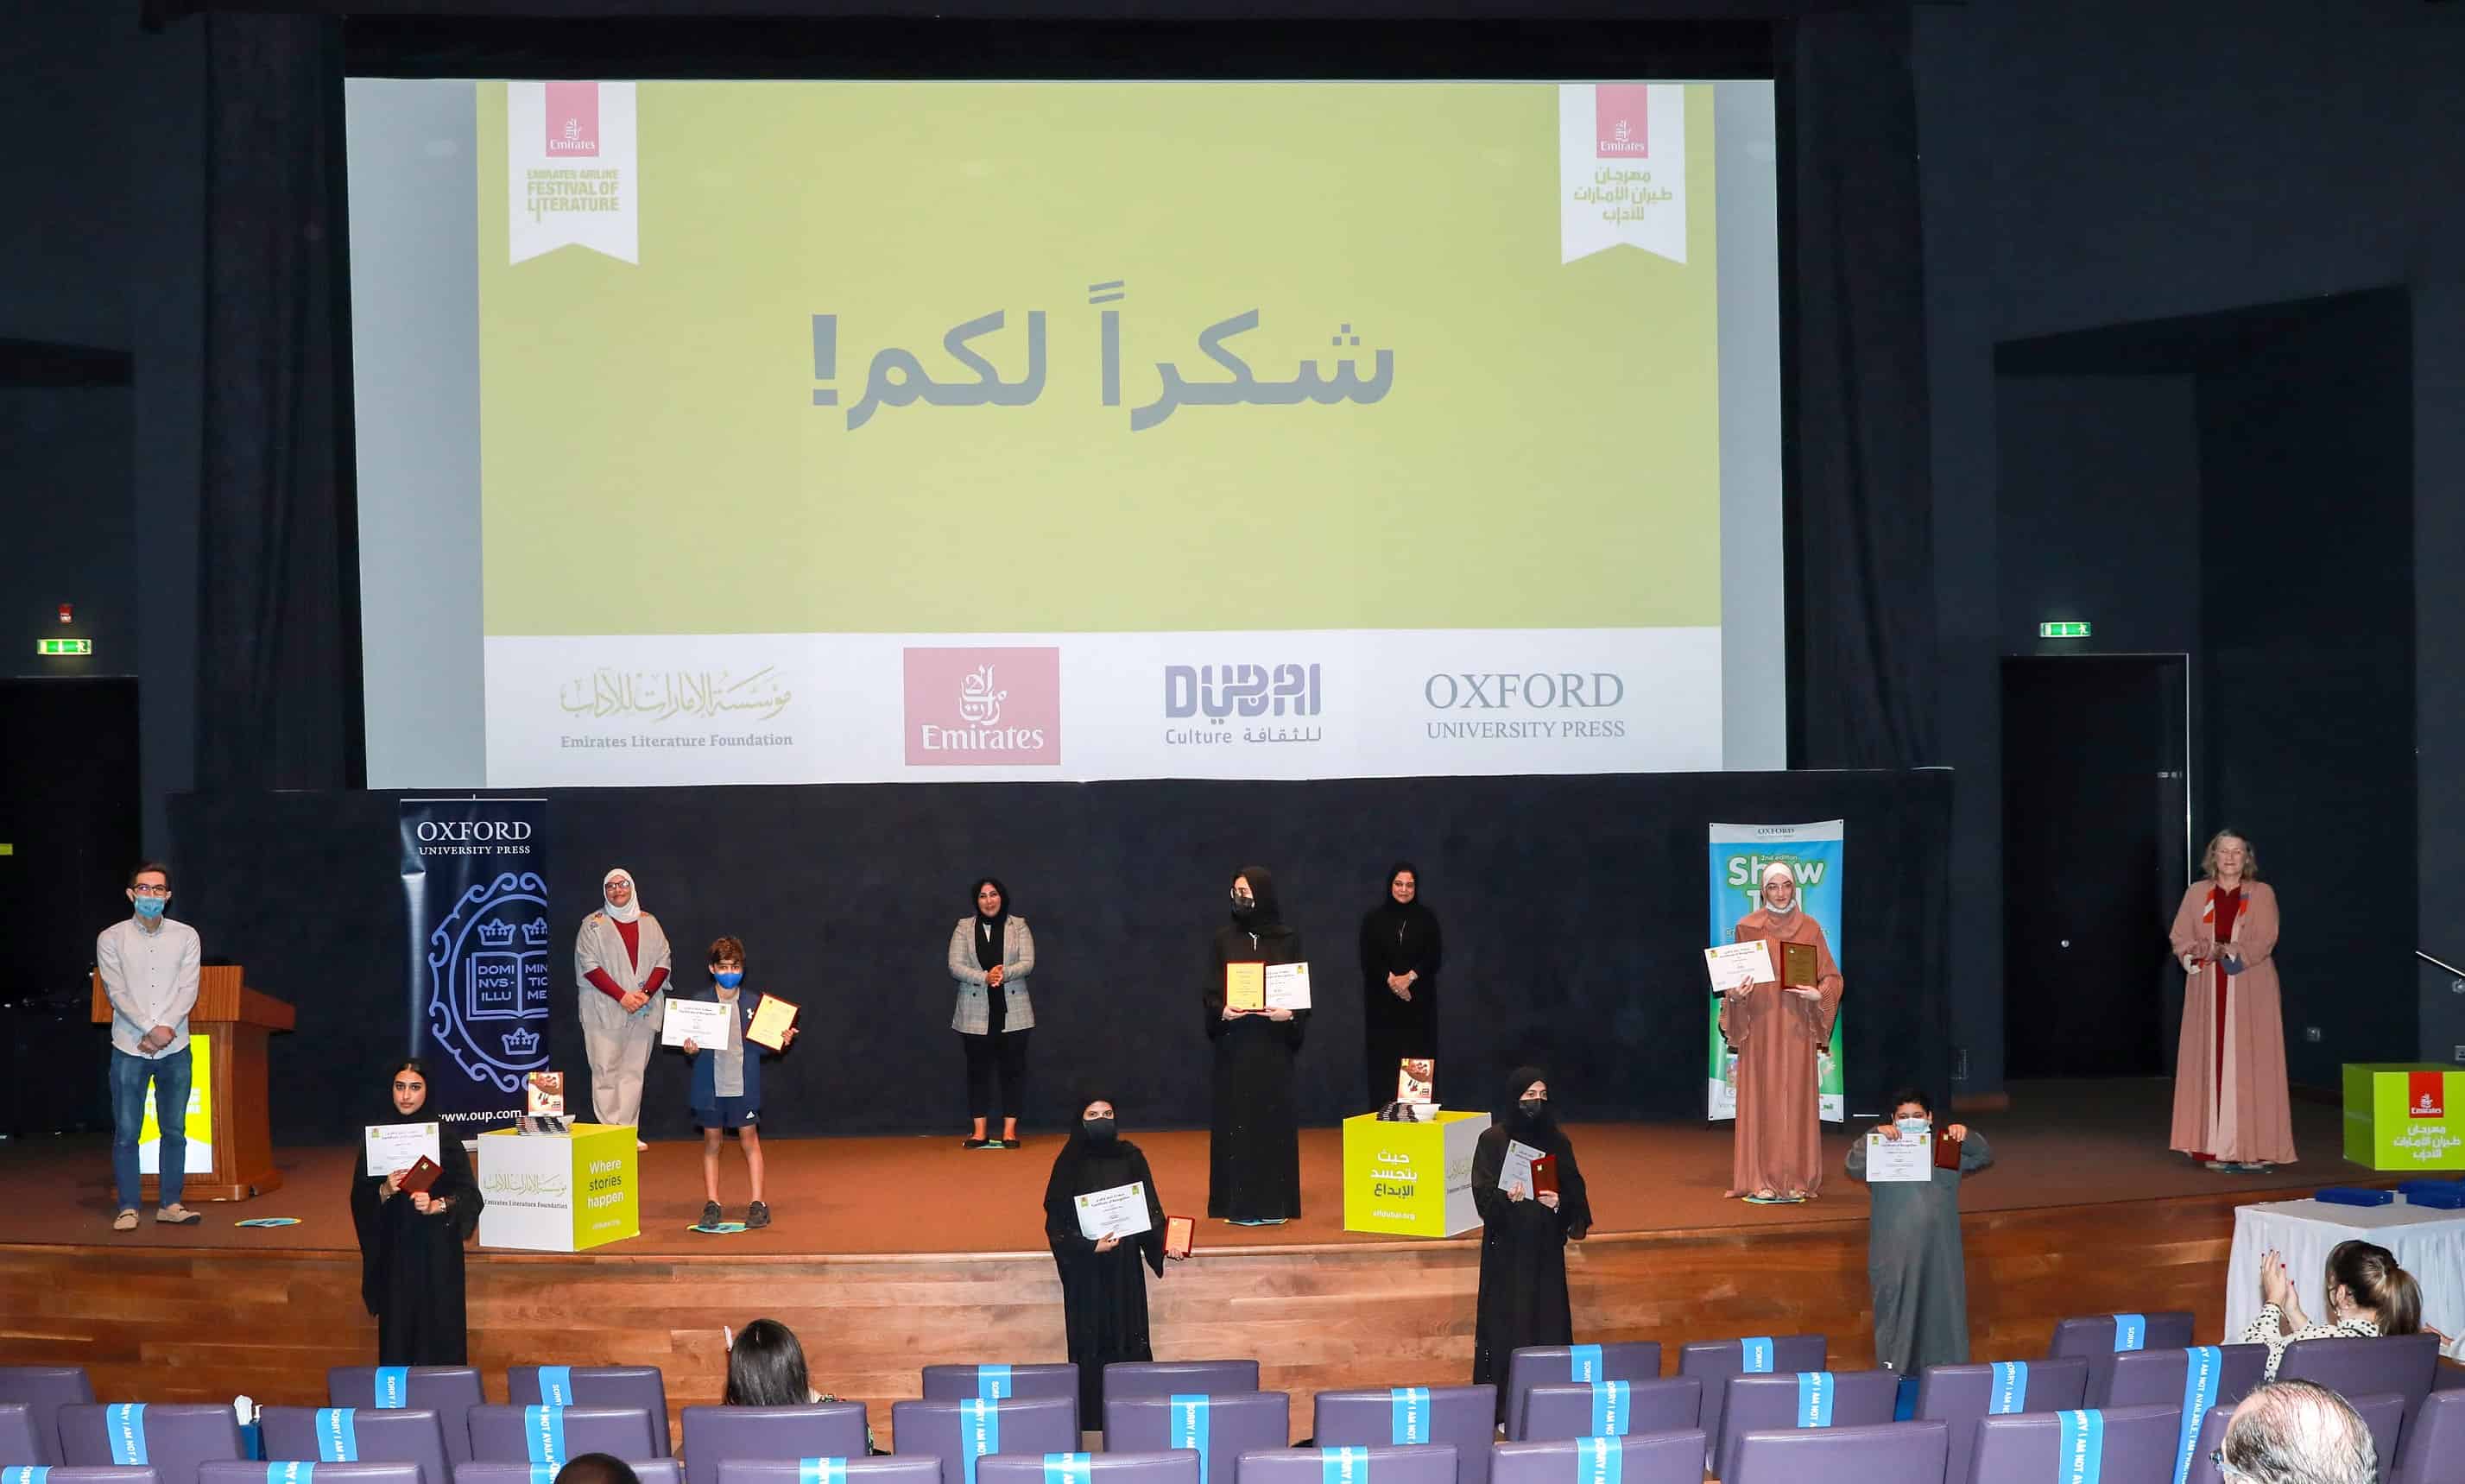 Festival Sastra Maskapai Emirates mengumumkan pemenang kompetisi sekolah